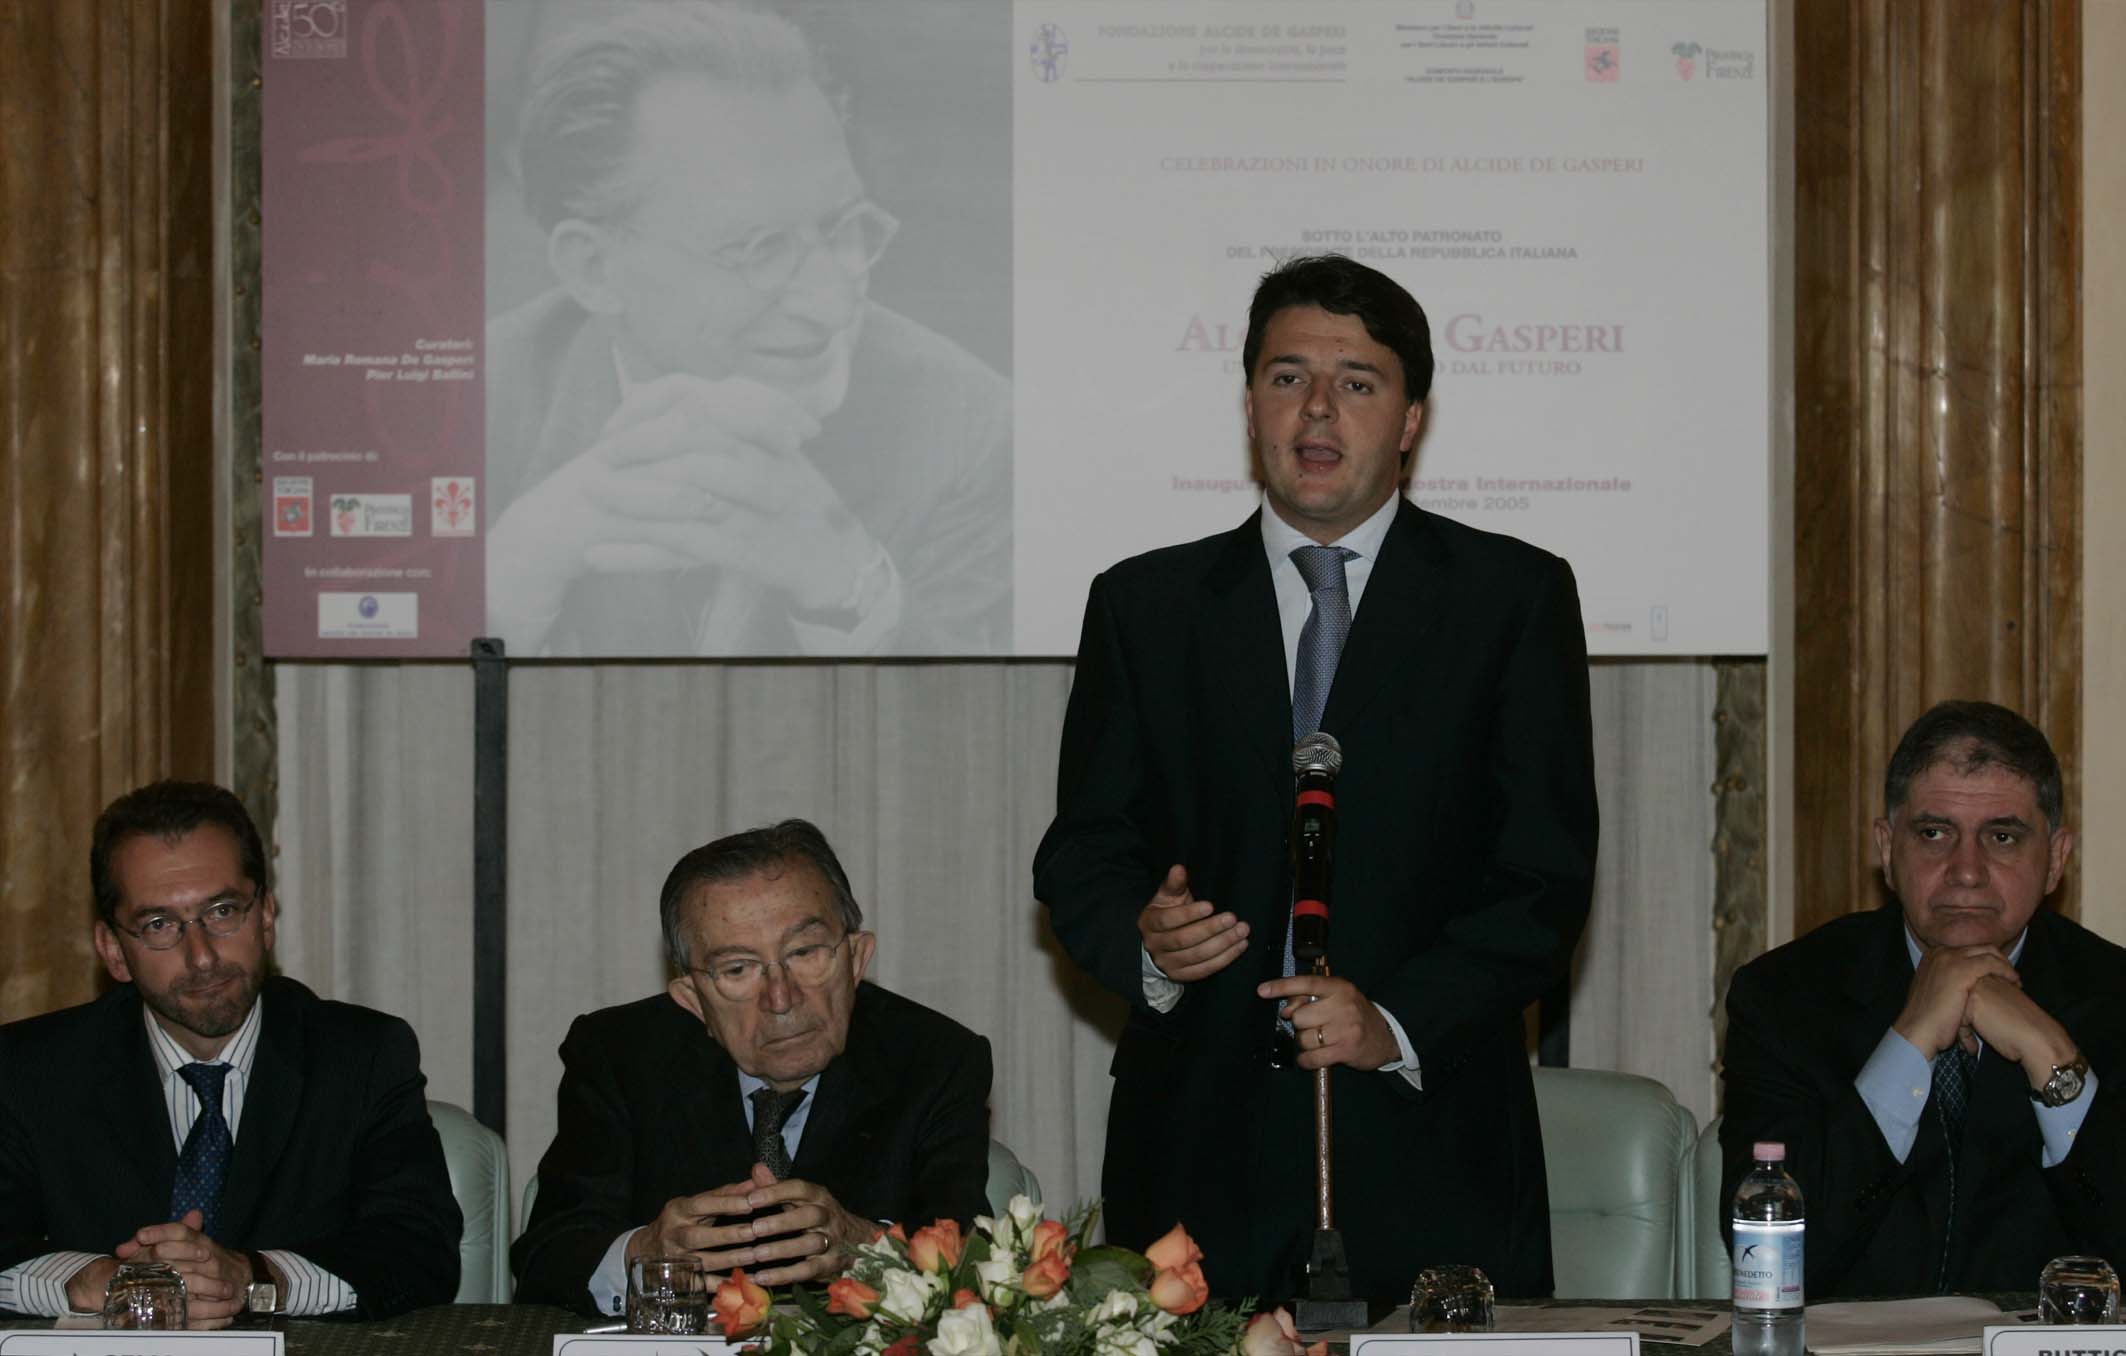 Da sinistra: Federico Gelli, vicepresidente Regione Toscana, il senatore Giulio Andreotti, il Presidente della Provincia Matteo Renzi, il Ministro Rocco Buttiglione (Foto Torrinifotogiornalismo)